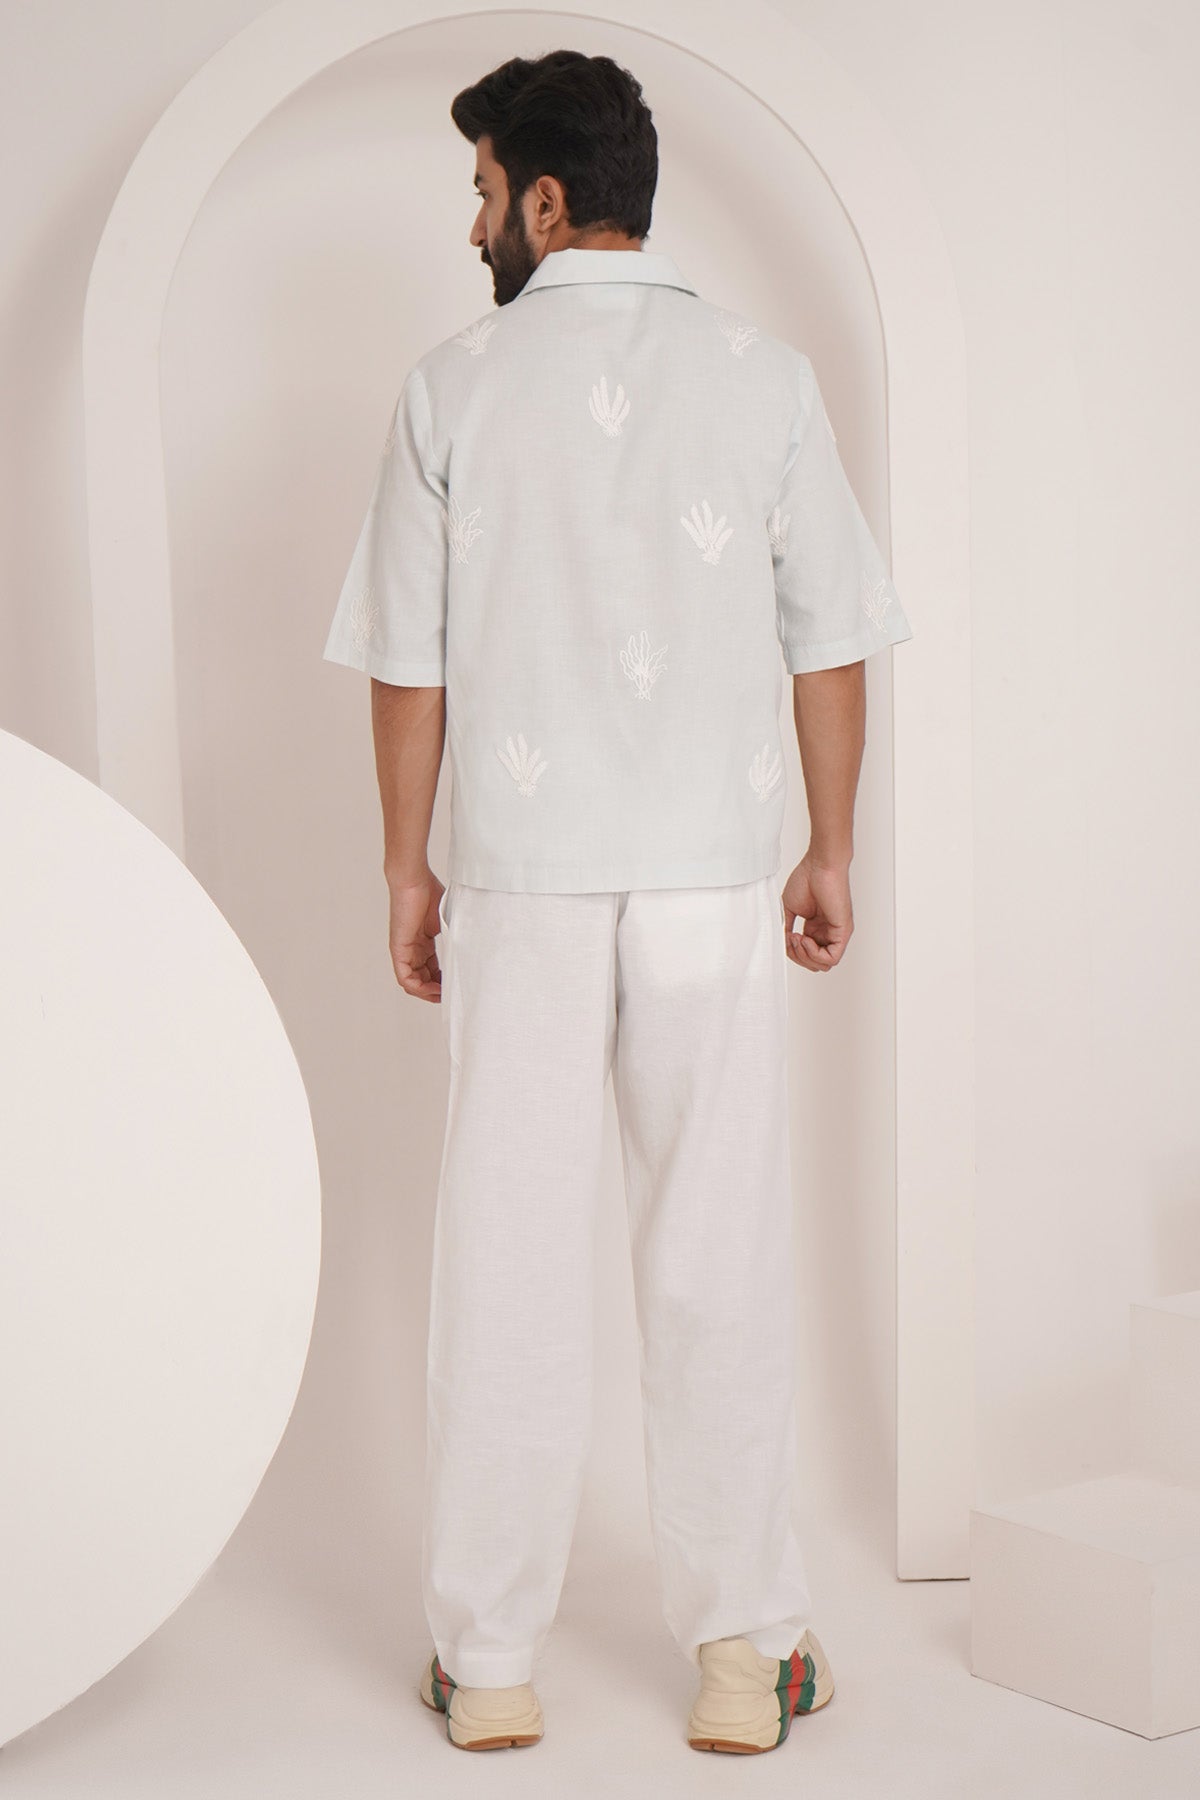 Aqua White Cotton Linen Shirt